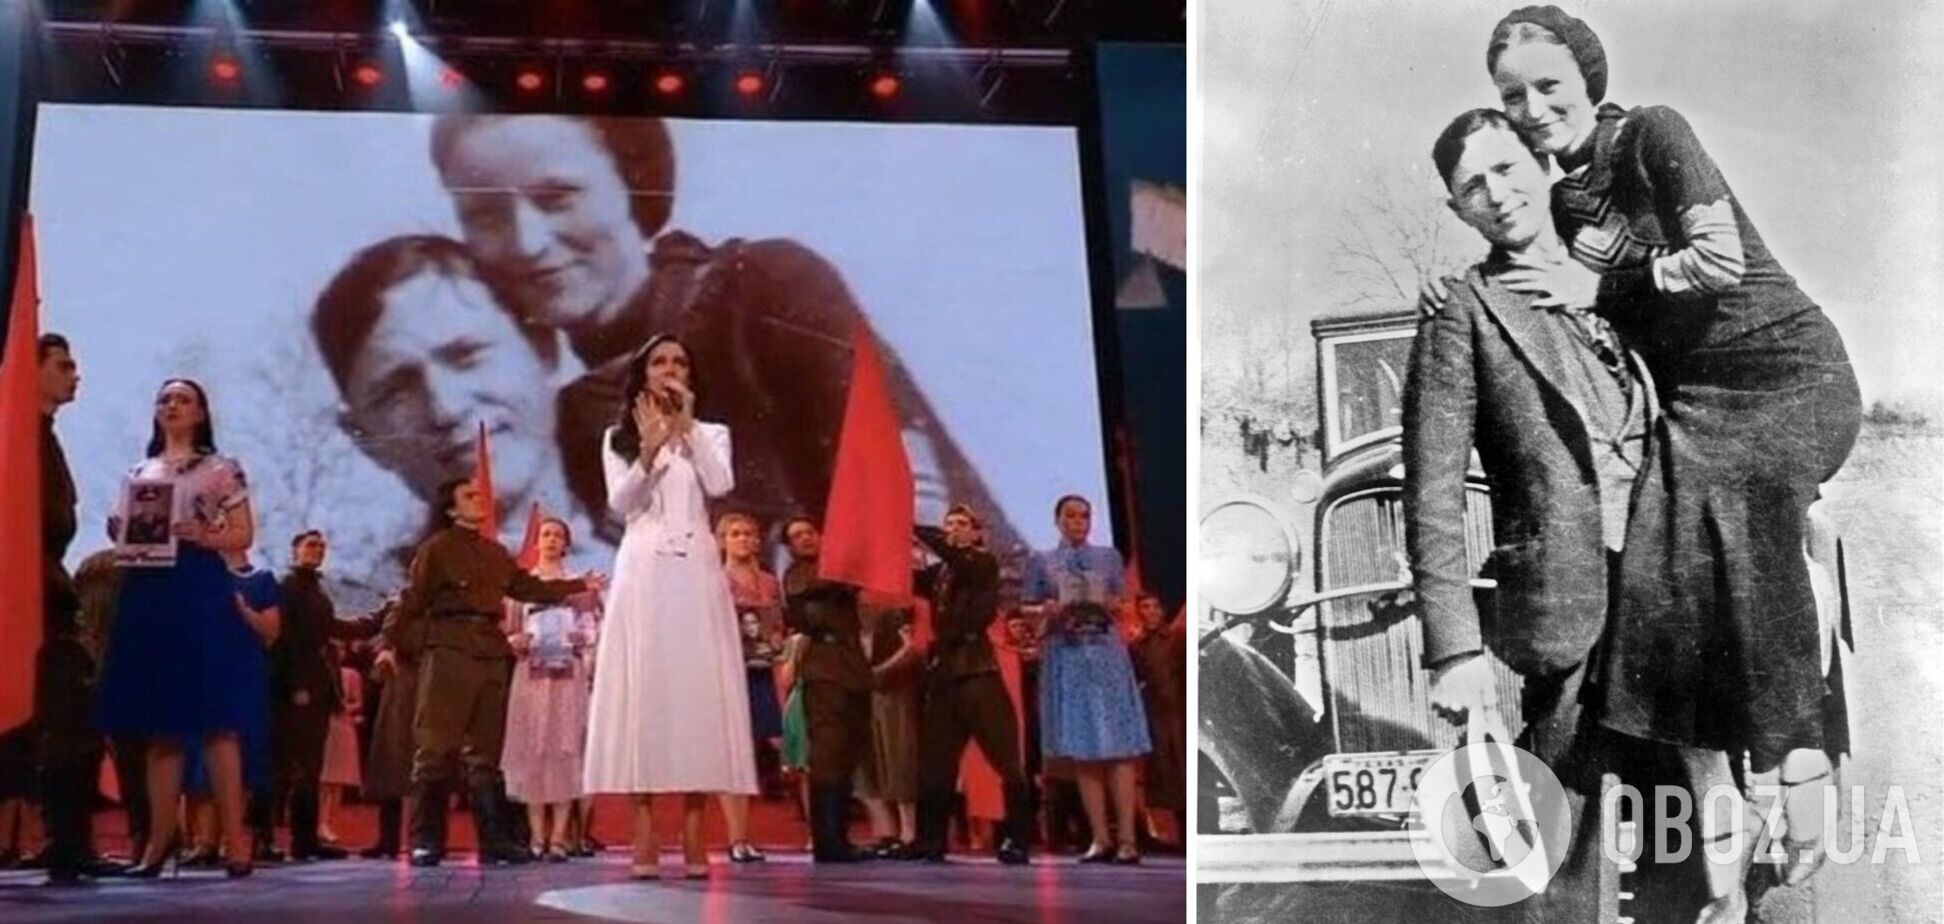 У Росії канал зганьбився фото Бонні та Клайда серед 'розділених війною пар': відеофакт